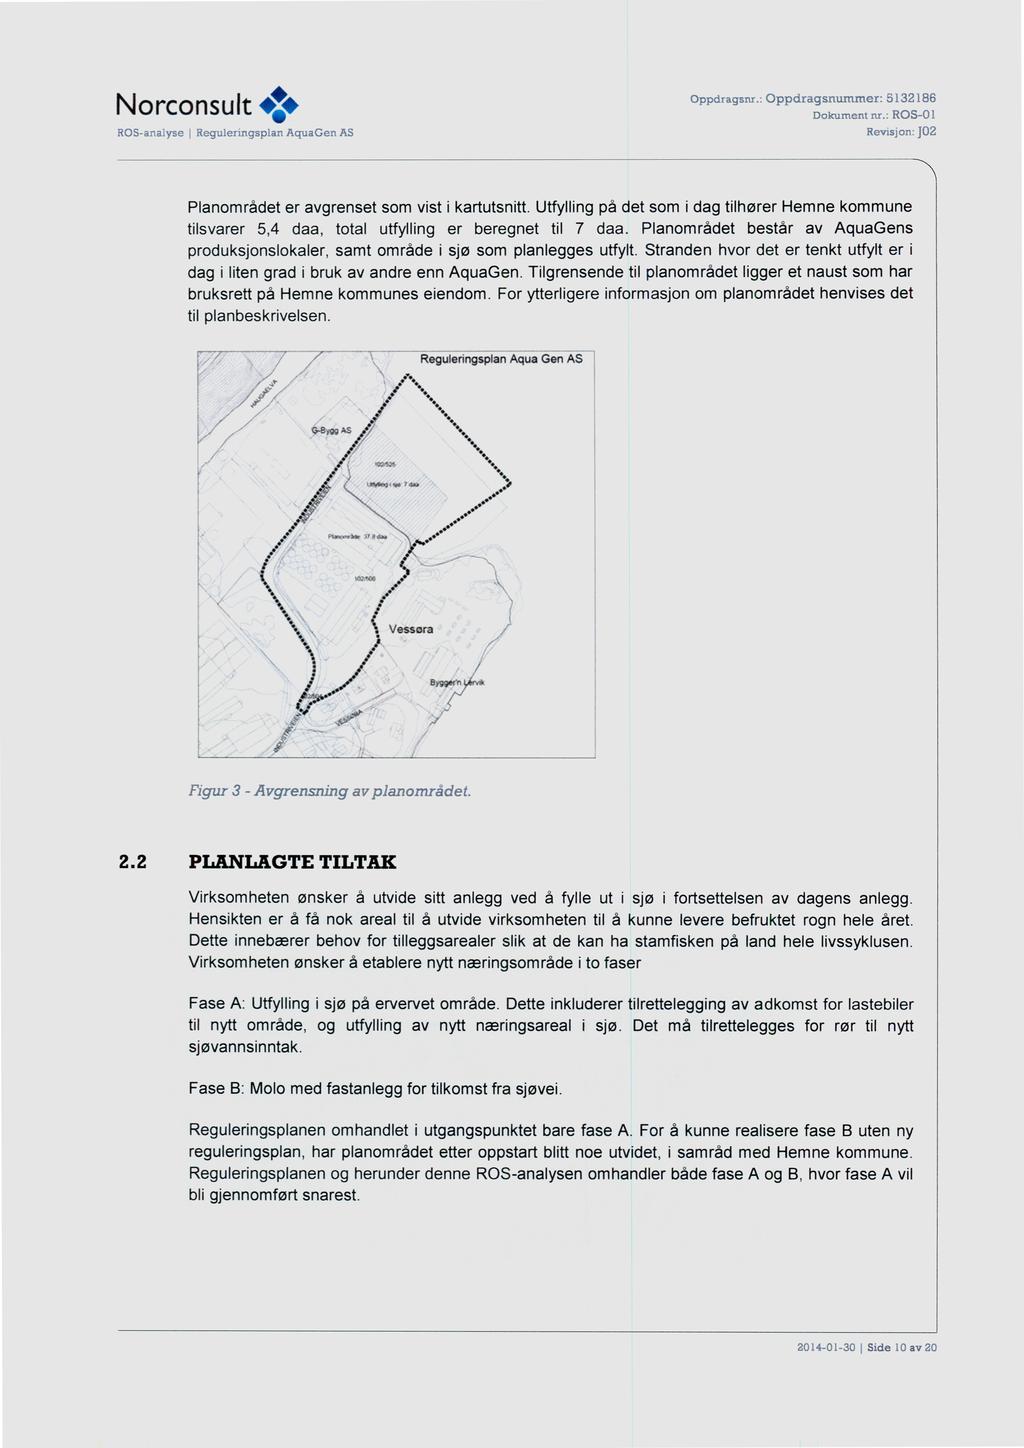 Norconsult <,* Planområdet er avgrenset som vist i kartutsnitt. Utfylling på det som i dag tilhører Hemne kommune tilsvarer 5,4 daa, total utfylling er beregnet til 7 daa.